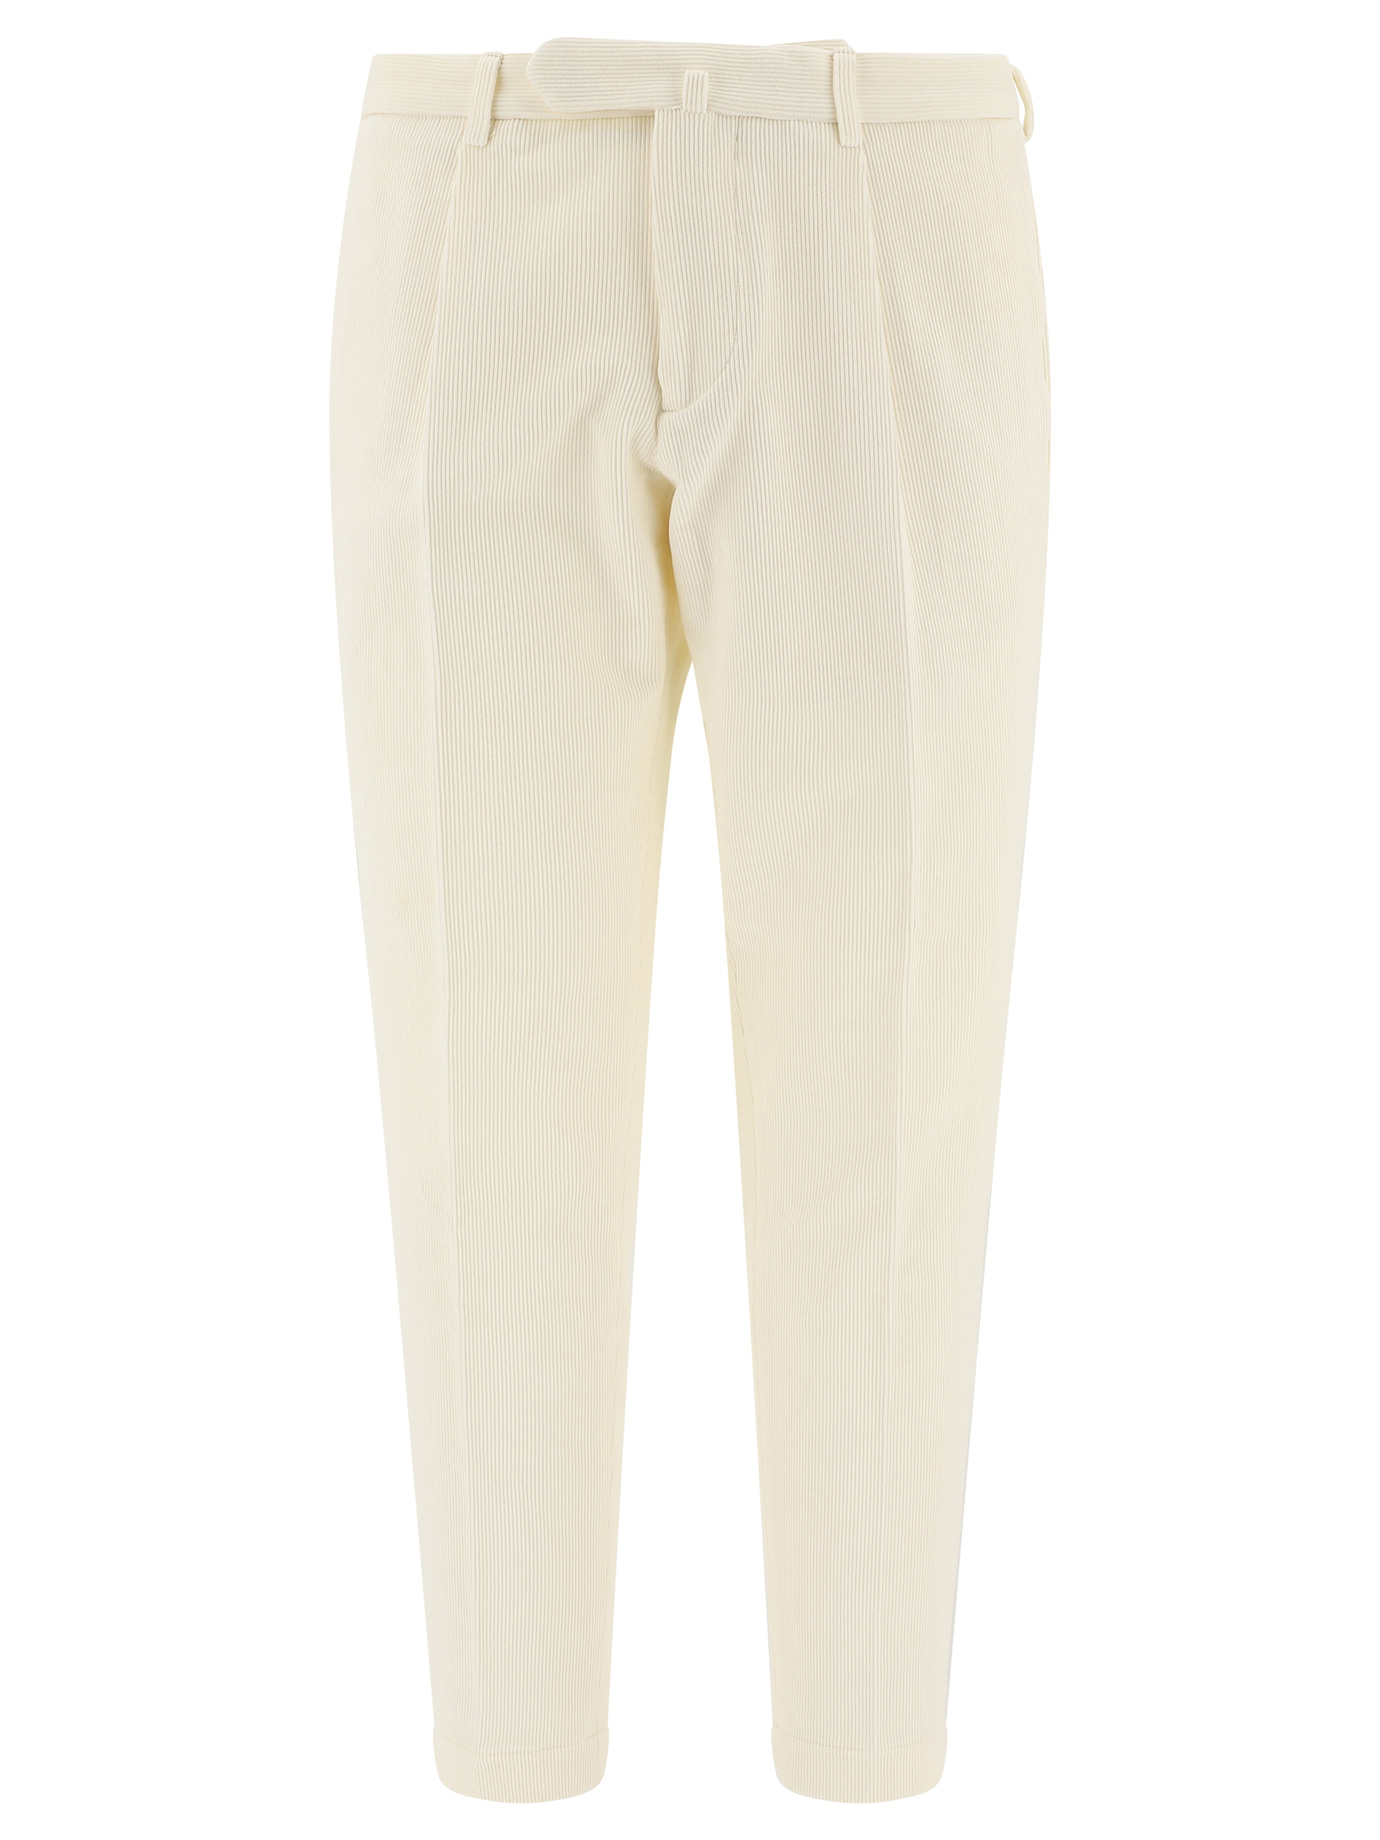 Biagio Santaniello 白色男士西装裤 Arechi-acc.6e6740e6740/01 In White